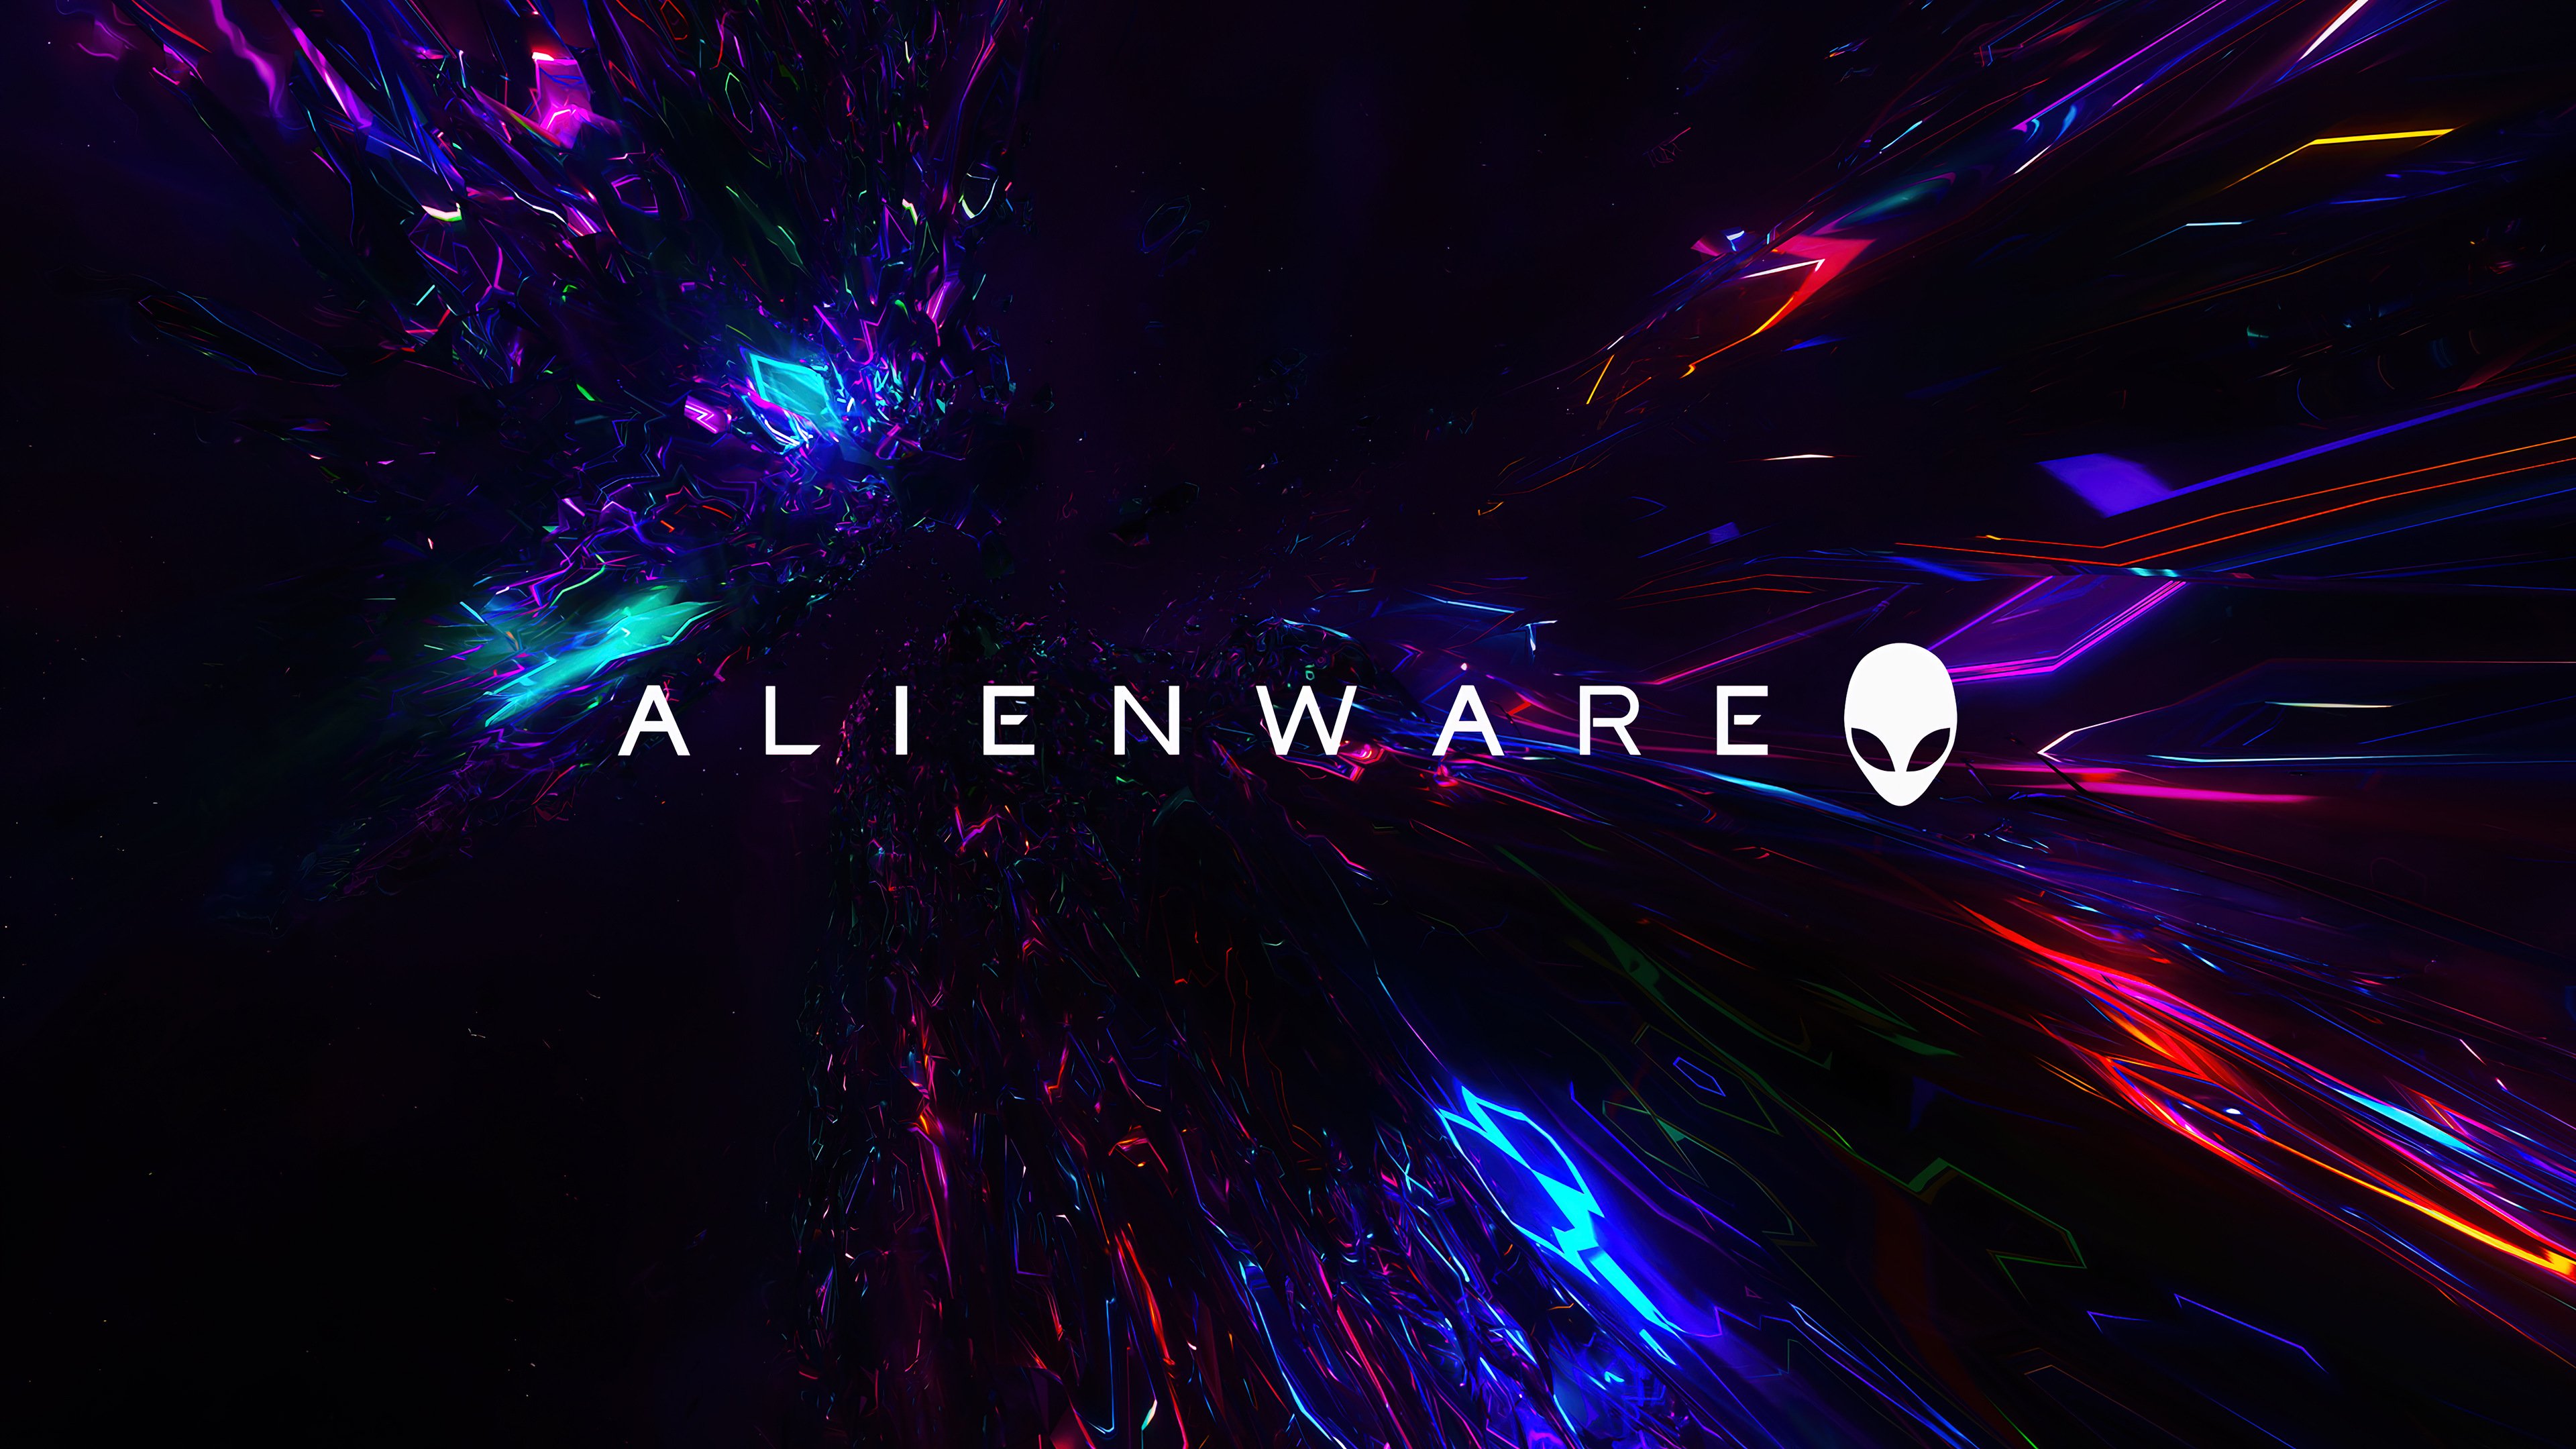 Alienware Wallpaper 4K, Stock